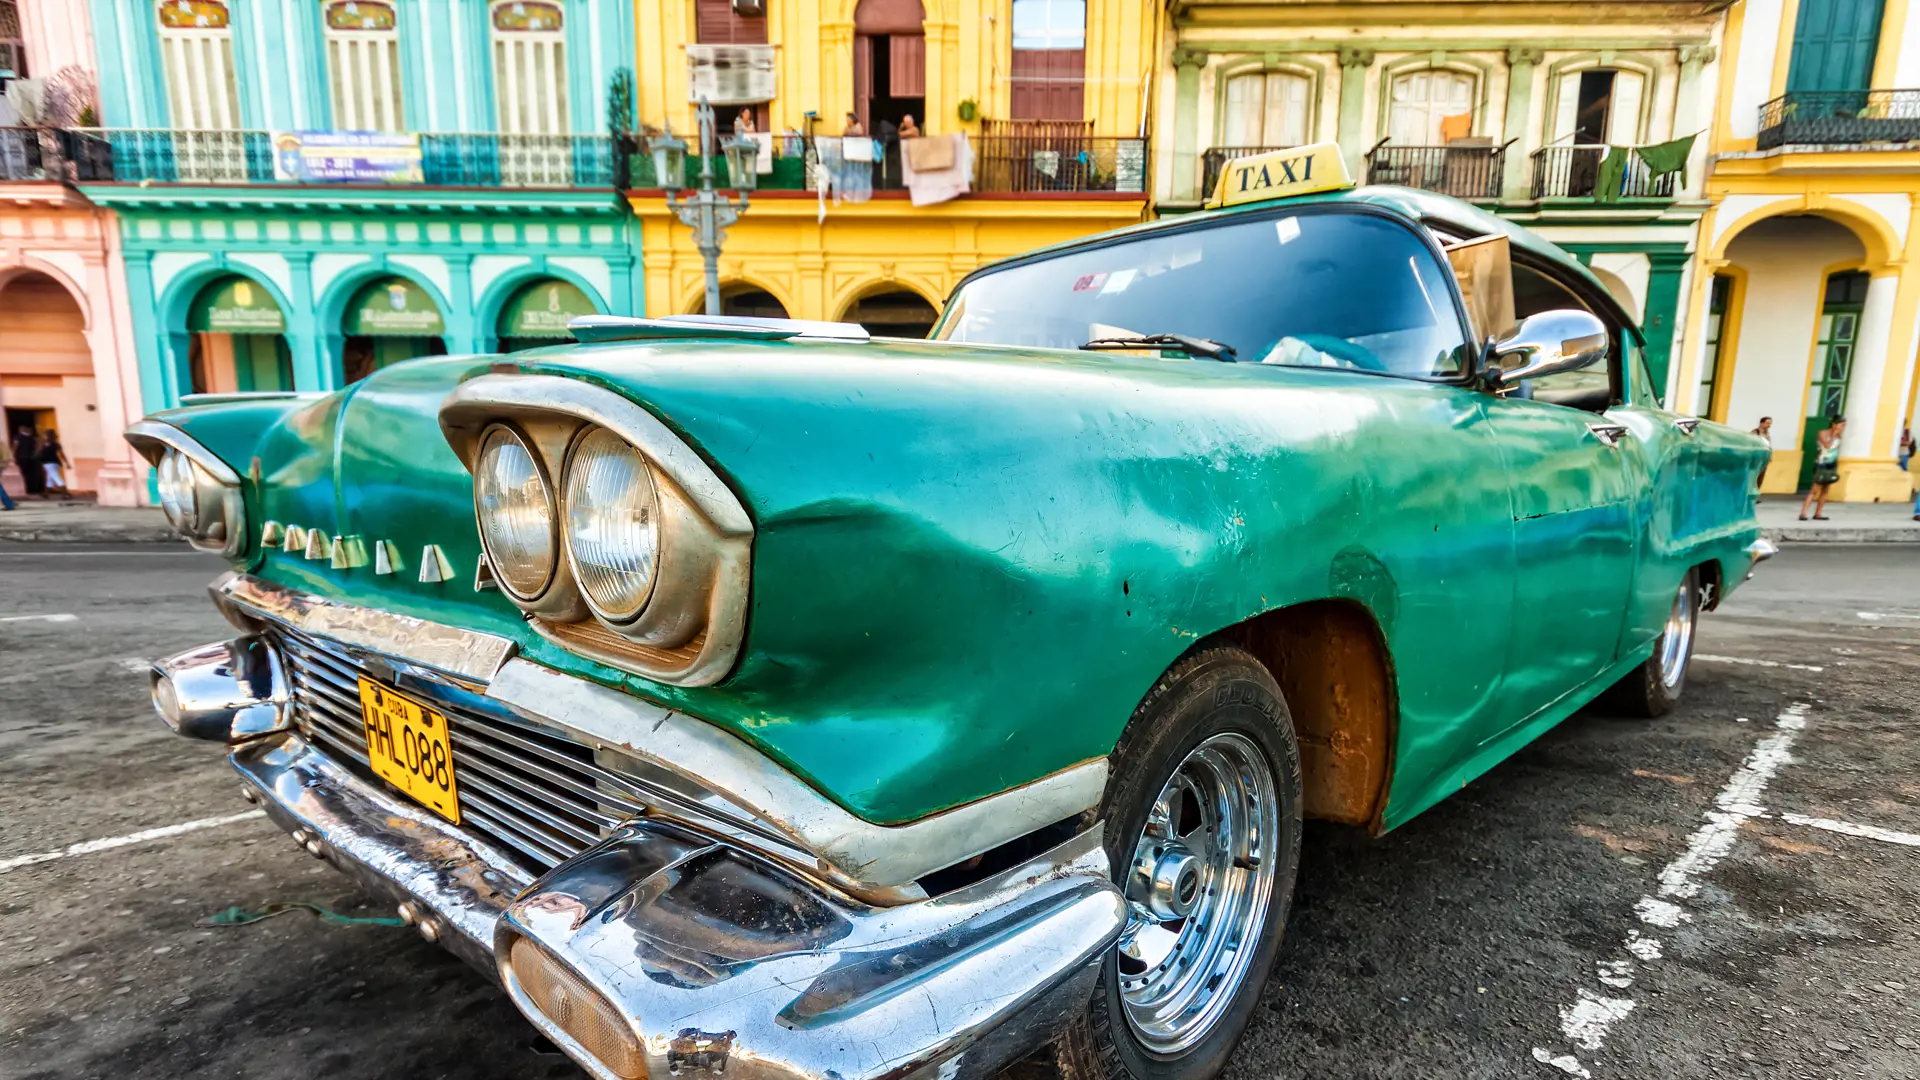 shutterstock_110700959 Vintage Cadillac in a colorful neighborhood August 14,2012 in Havana.jpg